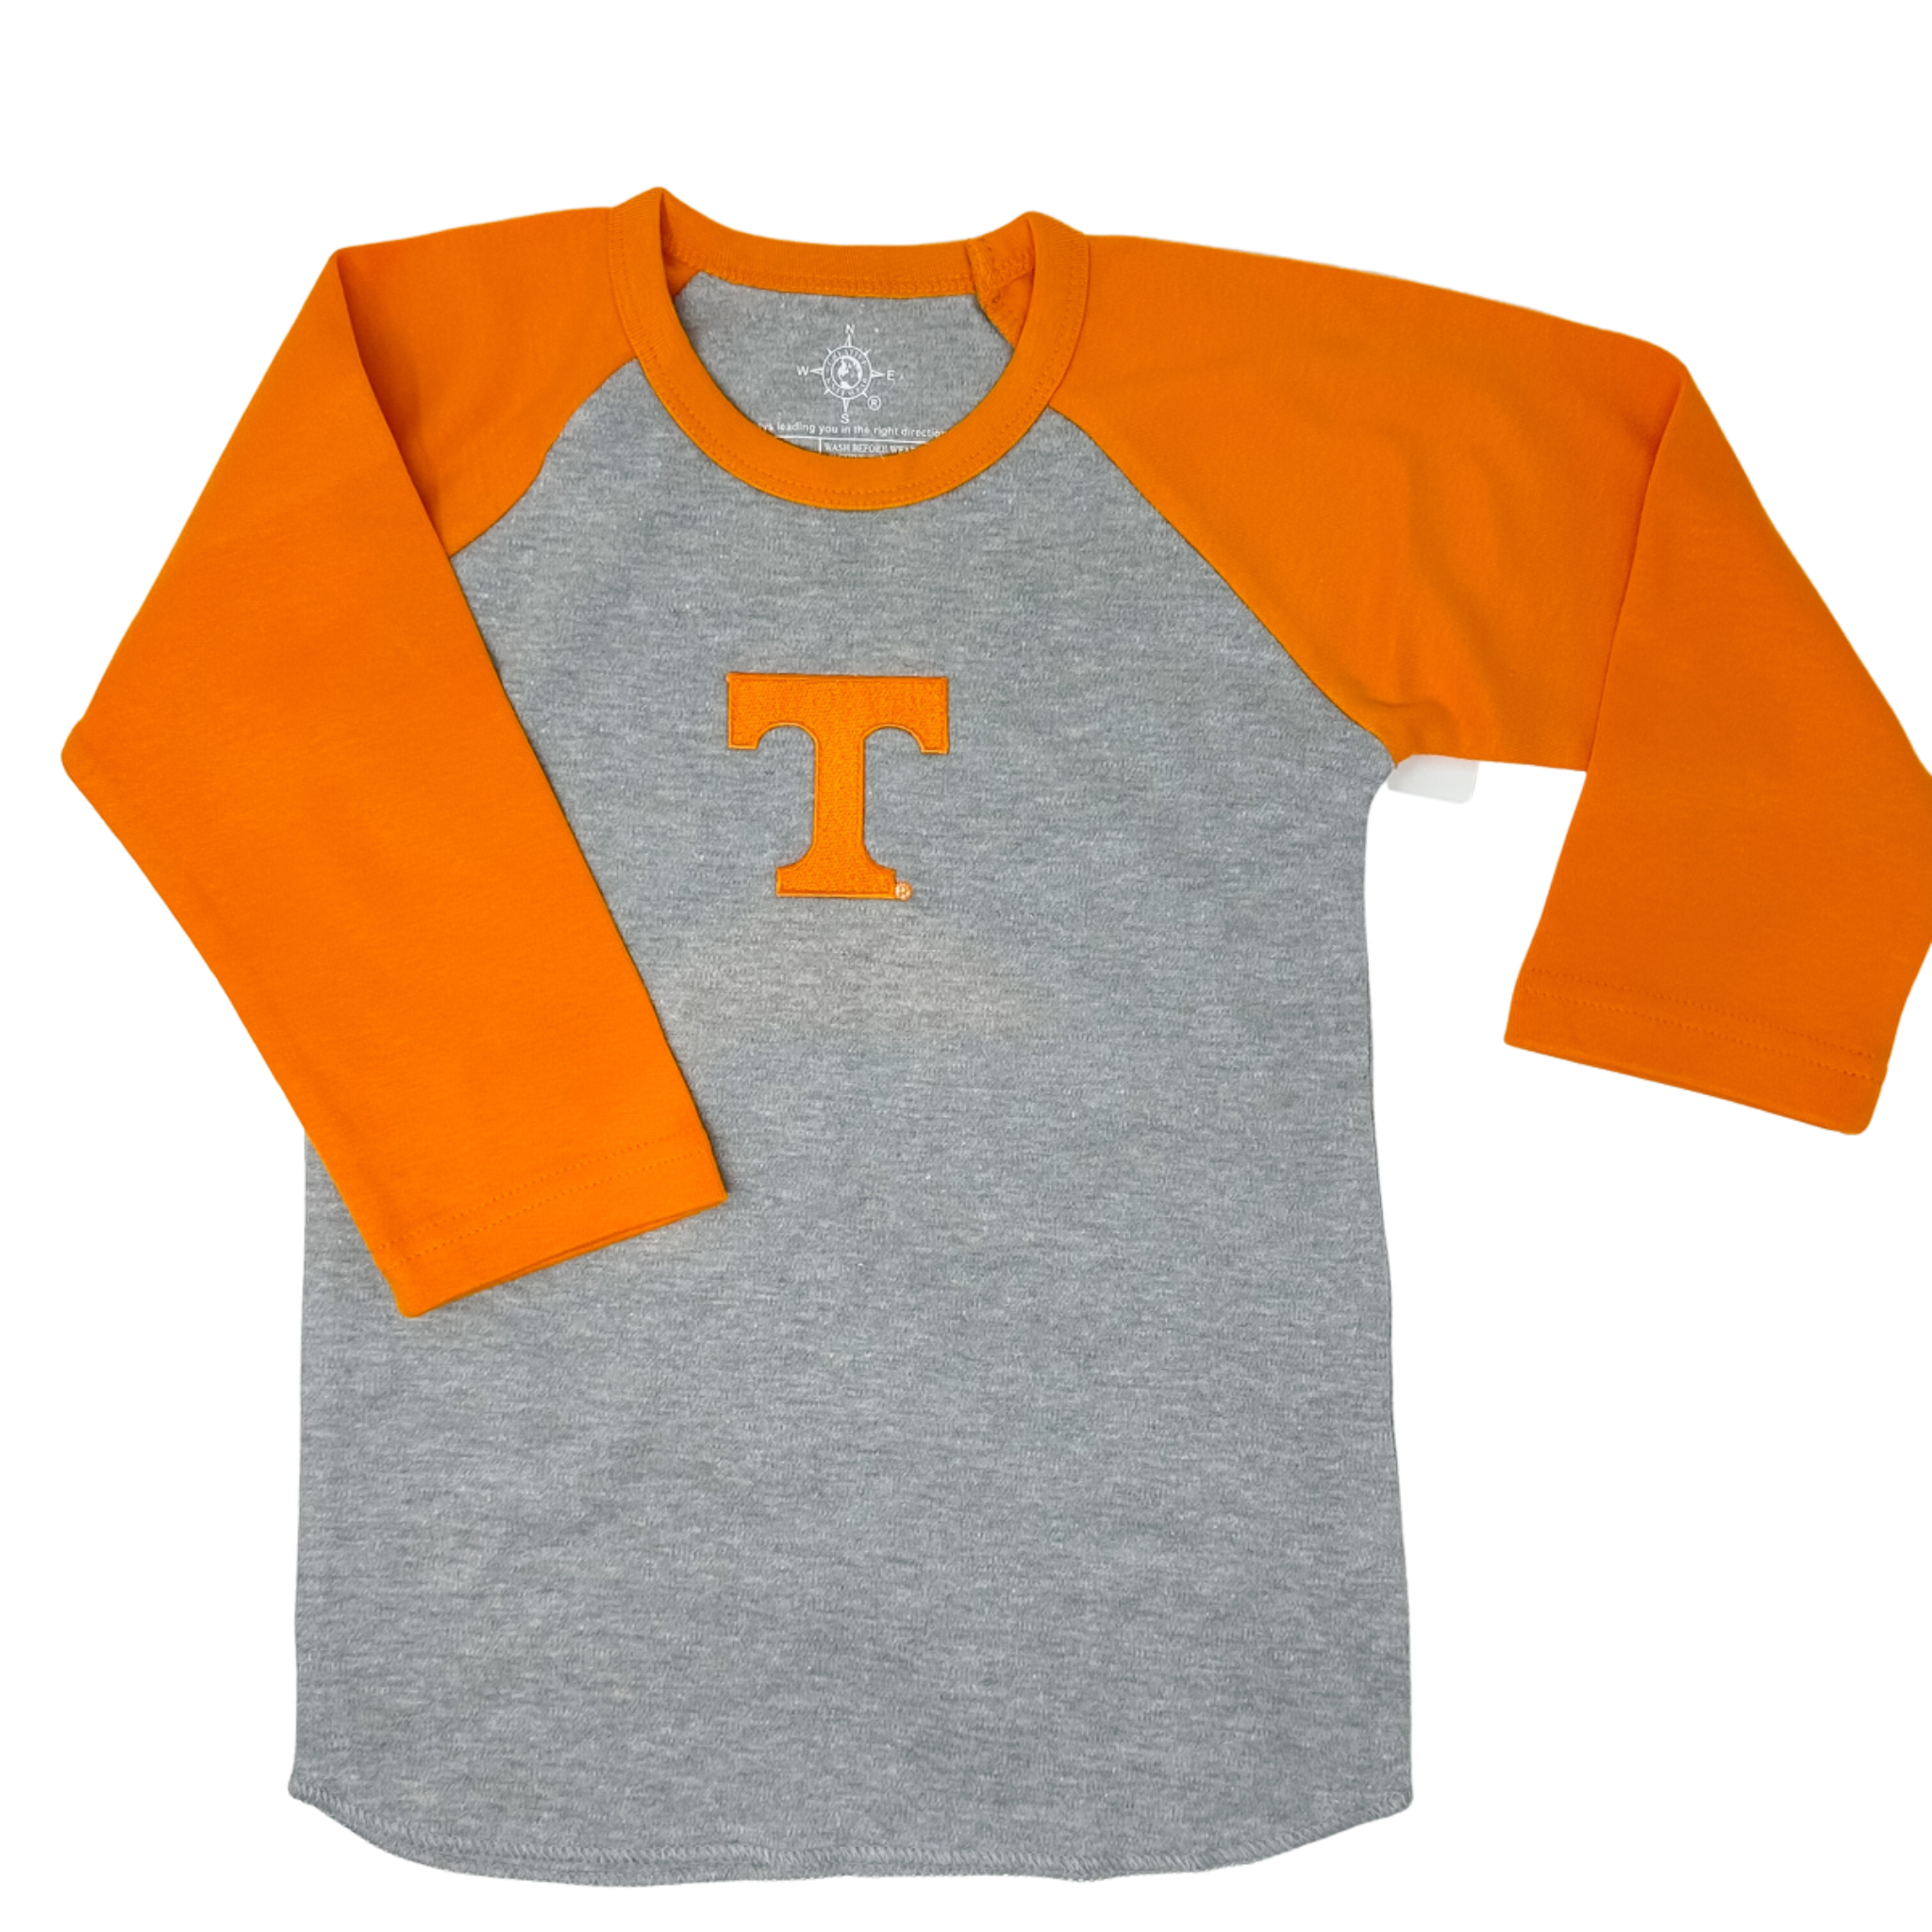 Creative Knitwear - Baseball Shirt - TN Orange